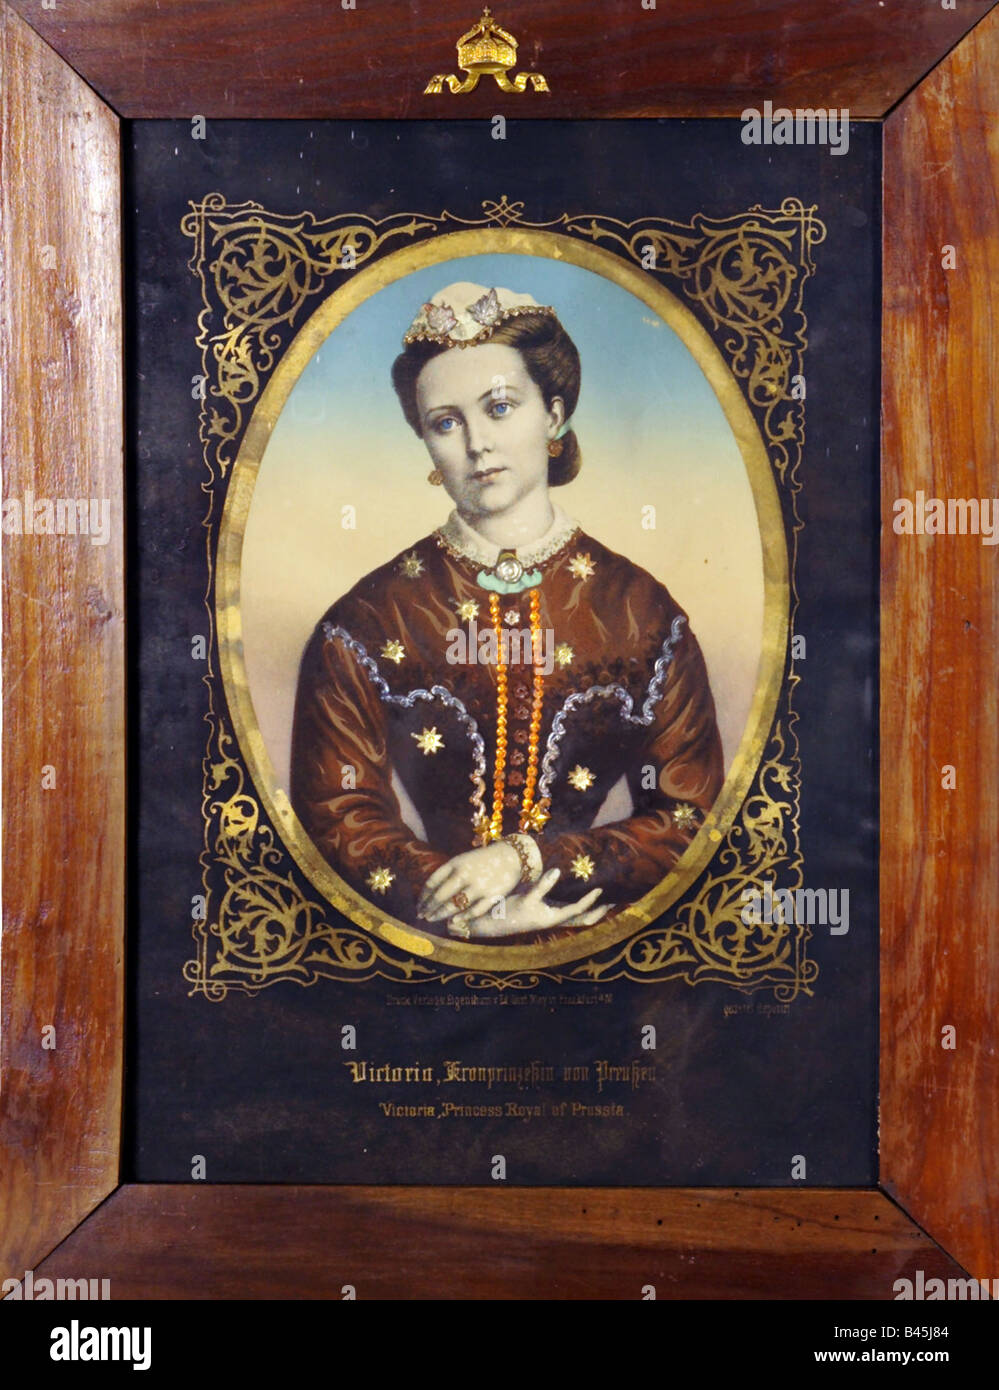 Victoria Adelaide, 21.11.1840 - 5.8. 1901, Empress consort 9.3.1888 - 15.6.1888, ritratto, incisione, pubblicato da Eduard Gustav May, Francoforte, 1871, , Foto Stock